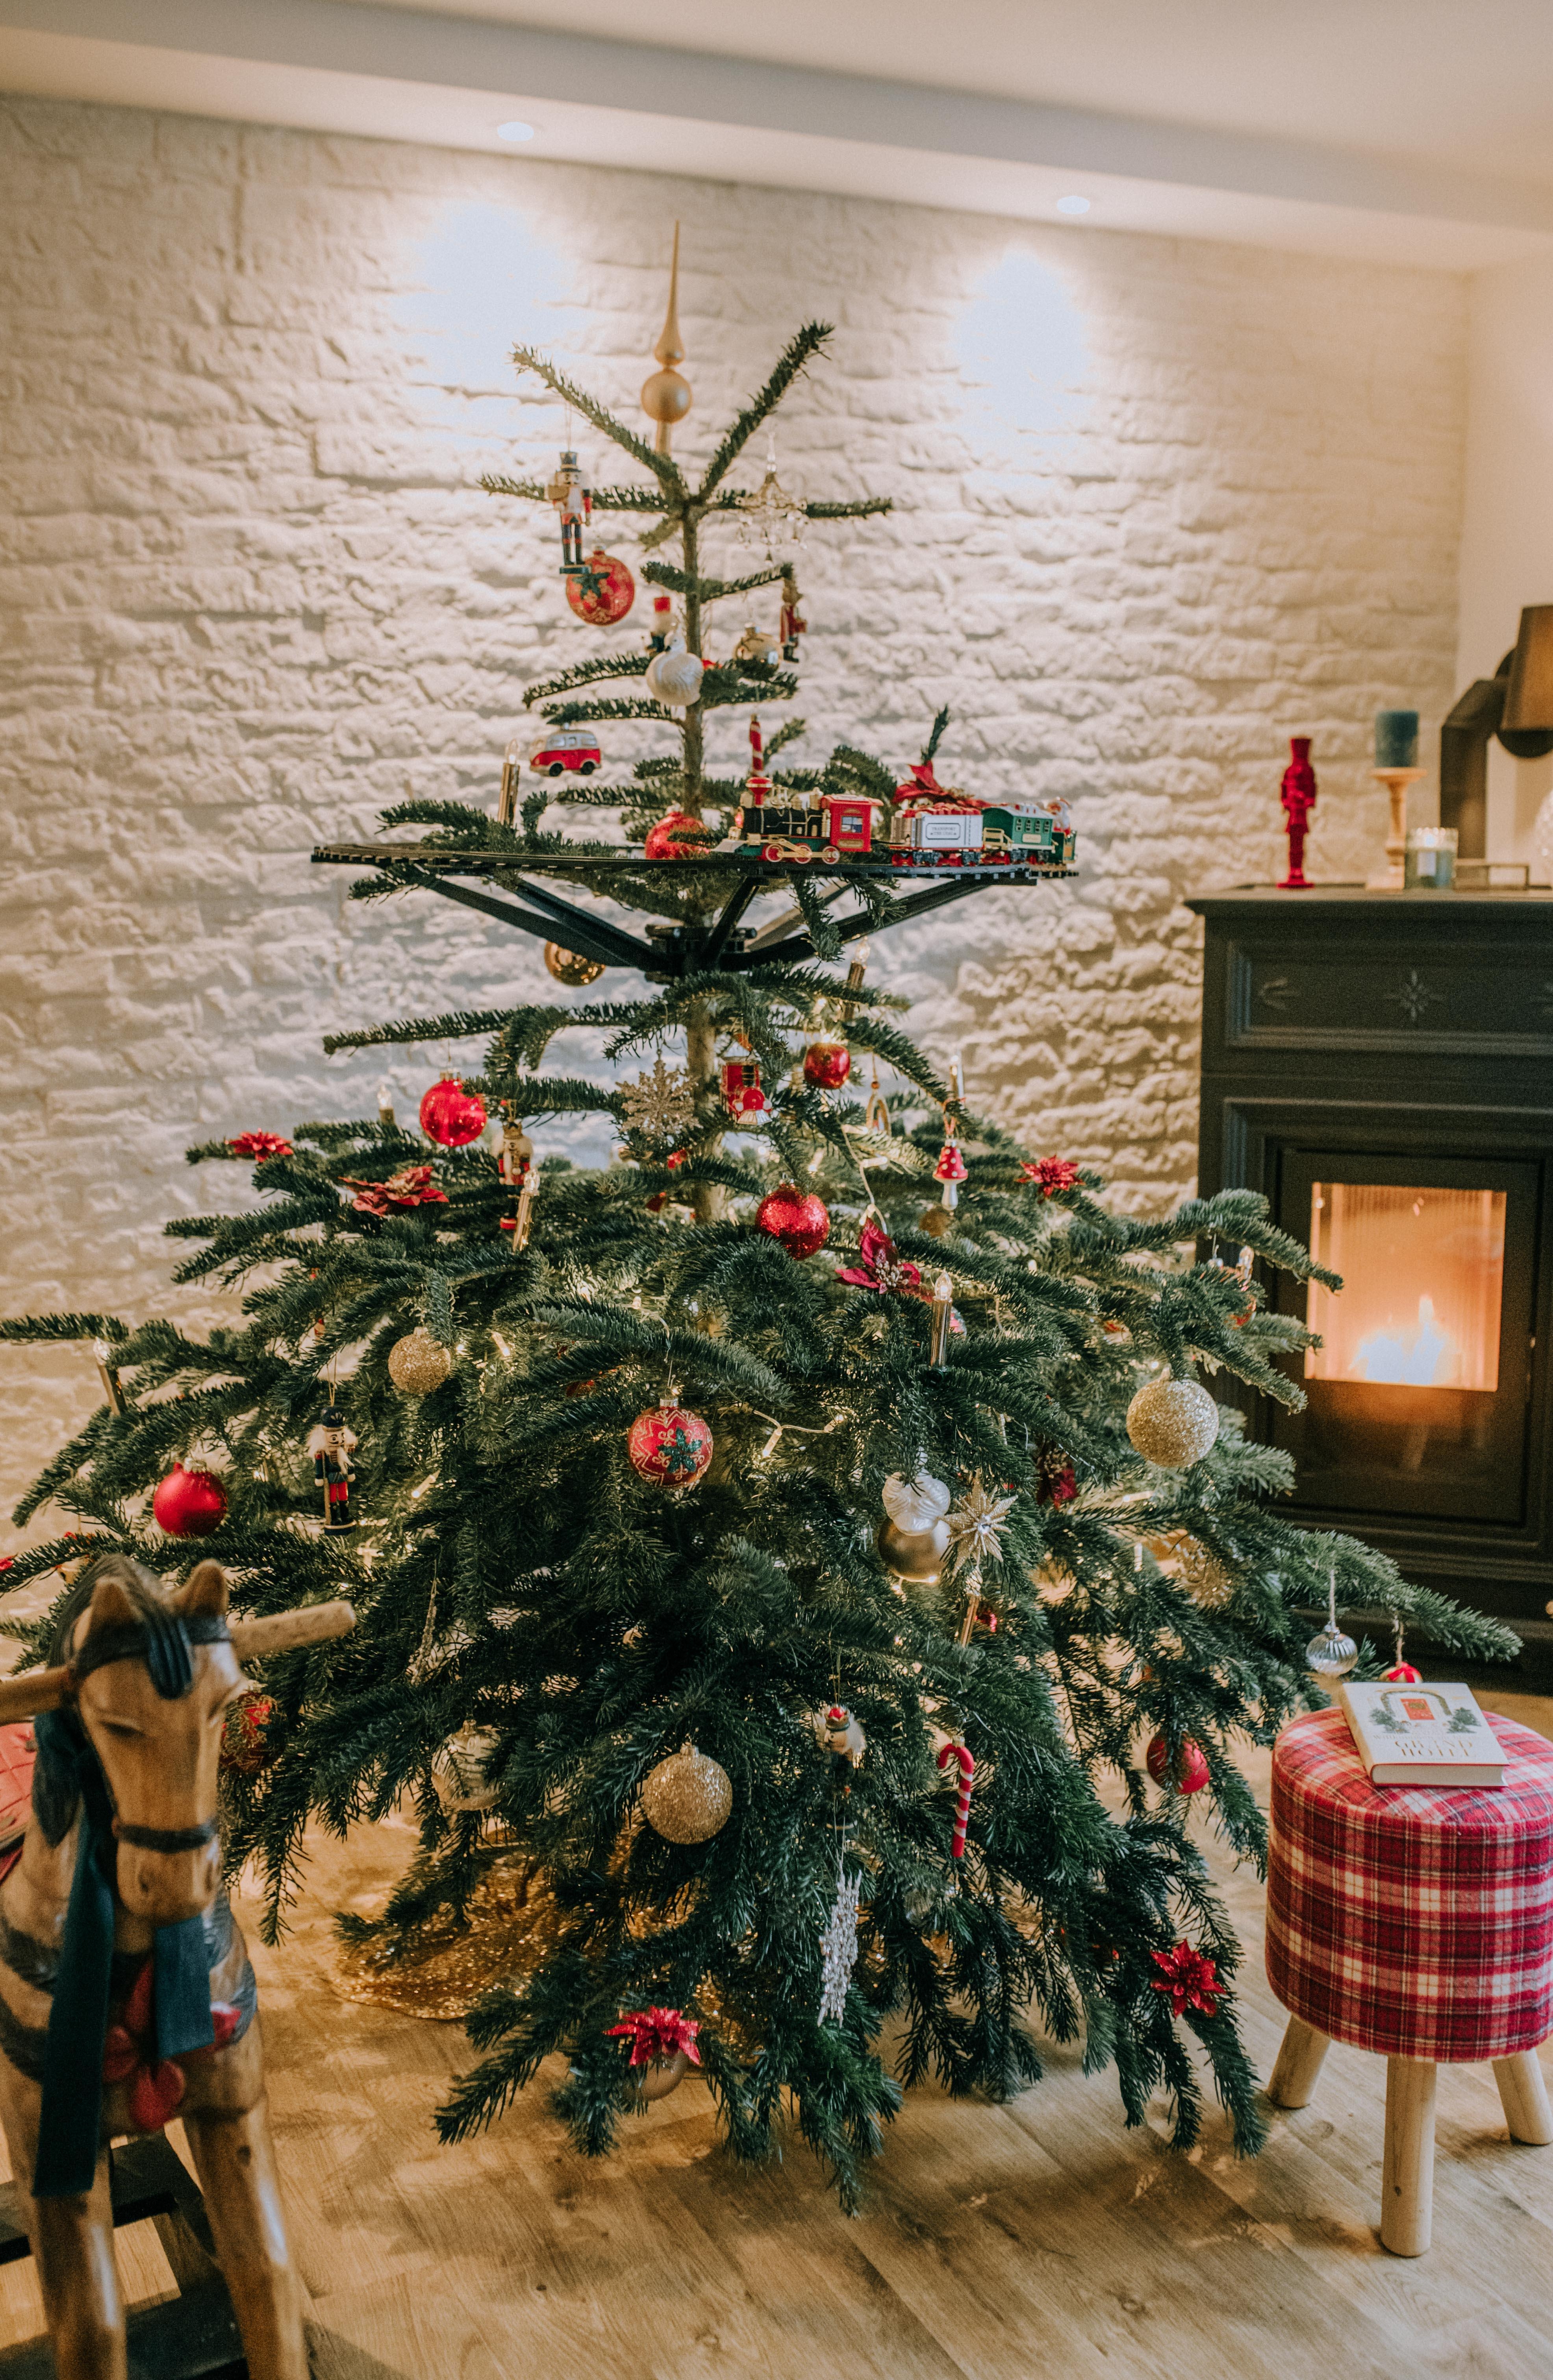 Unser Christbaum mit Weihnachtszug #couchliebt #Christbaum #weihnachtsbaum #couchstyle 